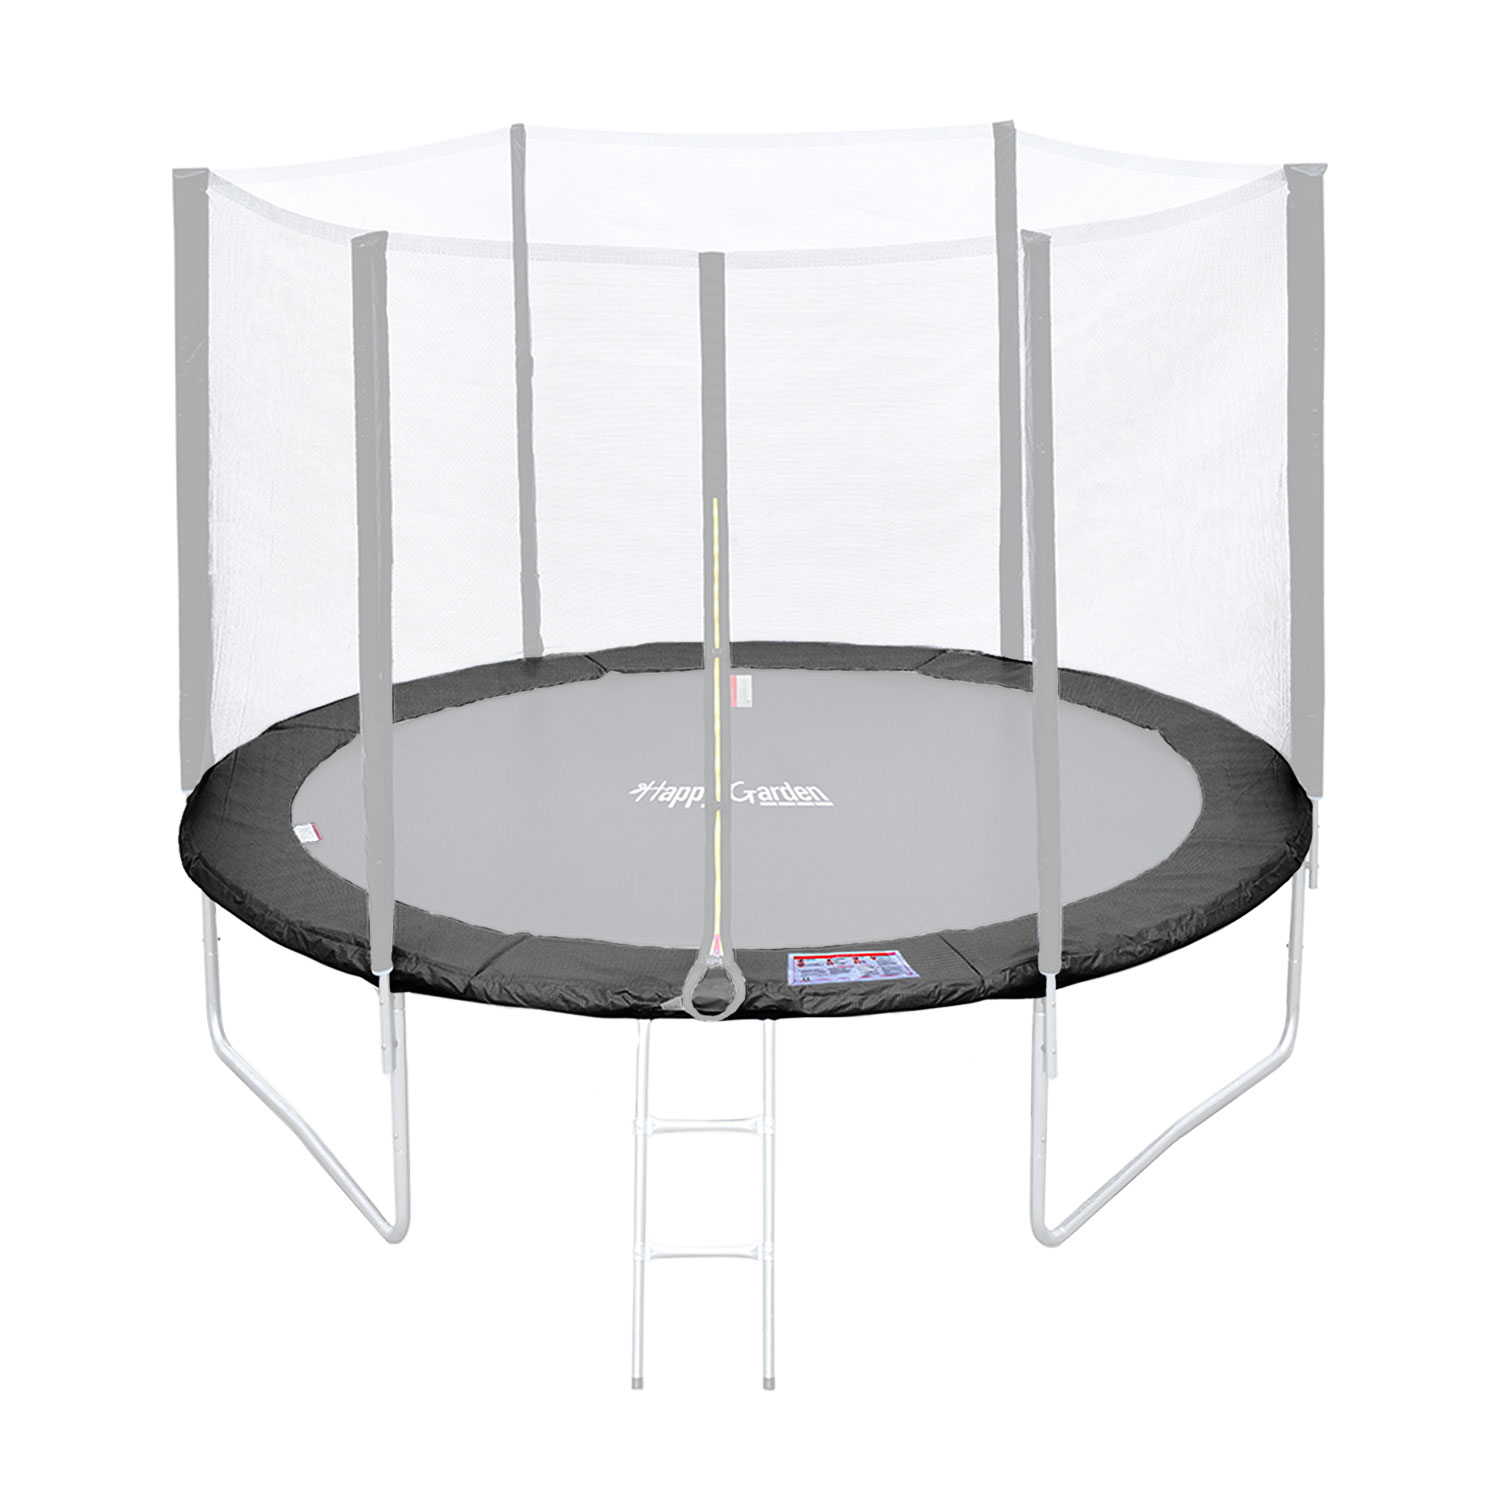 Matelas de protection réversible pour trampoline Ø305cm ADELAÏDE - gris/rose